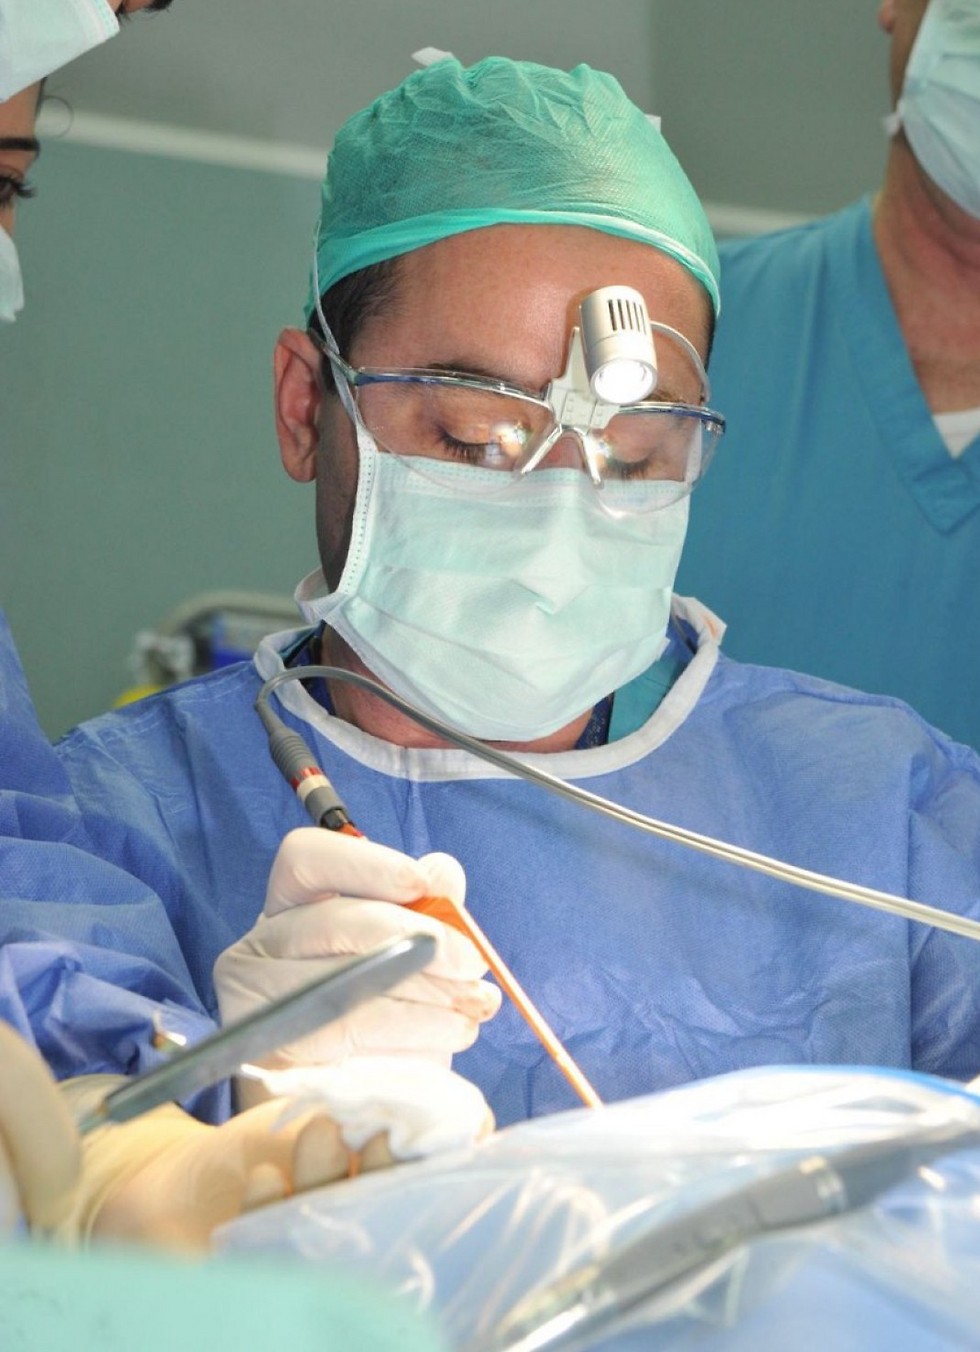 ד"ר מעין גרובר. ניתוח חירום לפעוט (צילום: רוני אלברט, דוברות המרכז הרפואי לגליל בנהריה) (צילום: רוני אלברט, דוברות המרכז הרפואי לגליל בנהריה)